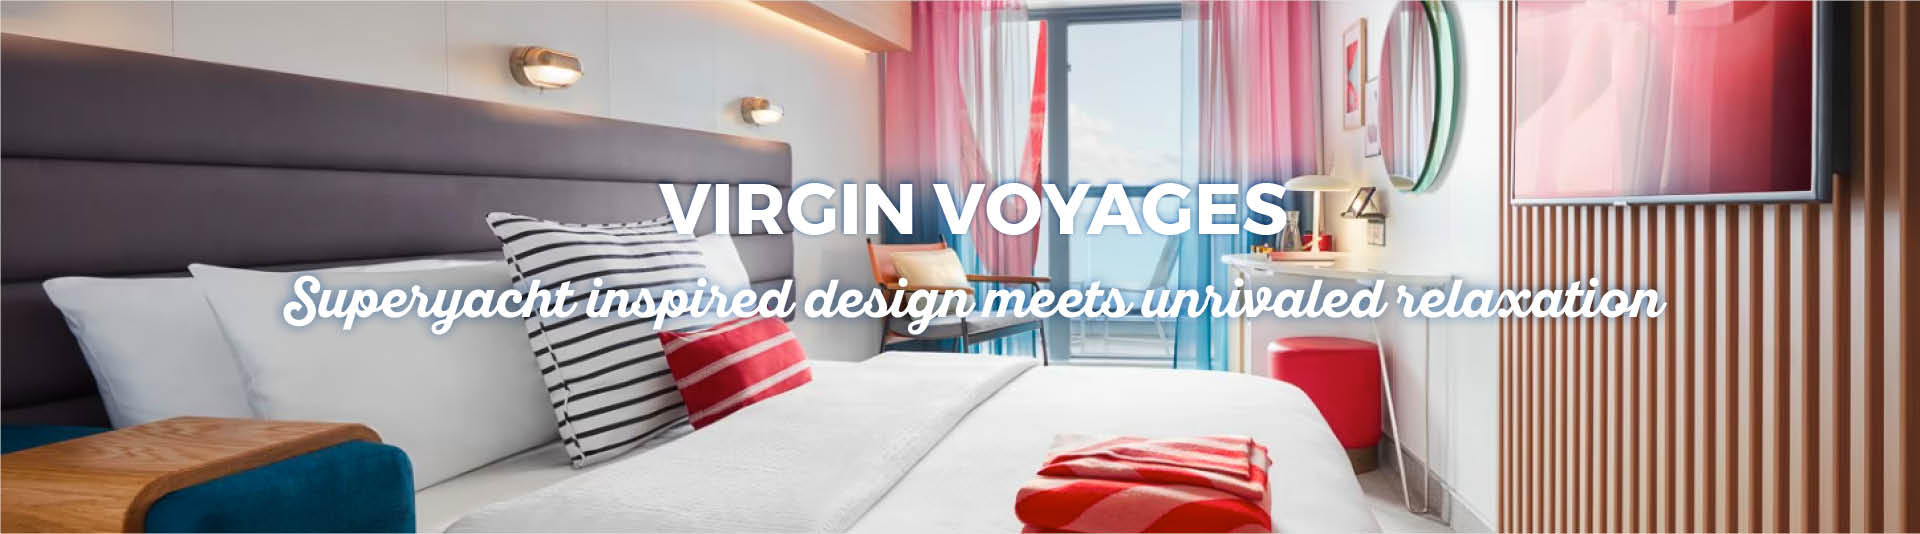 virgin-voyages.jpg